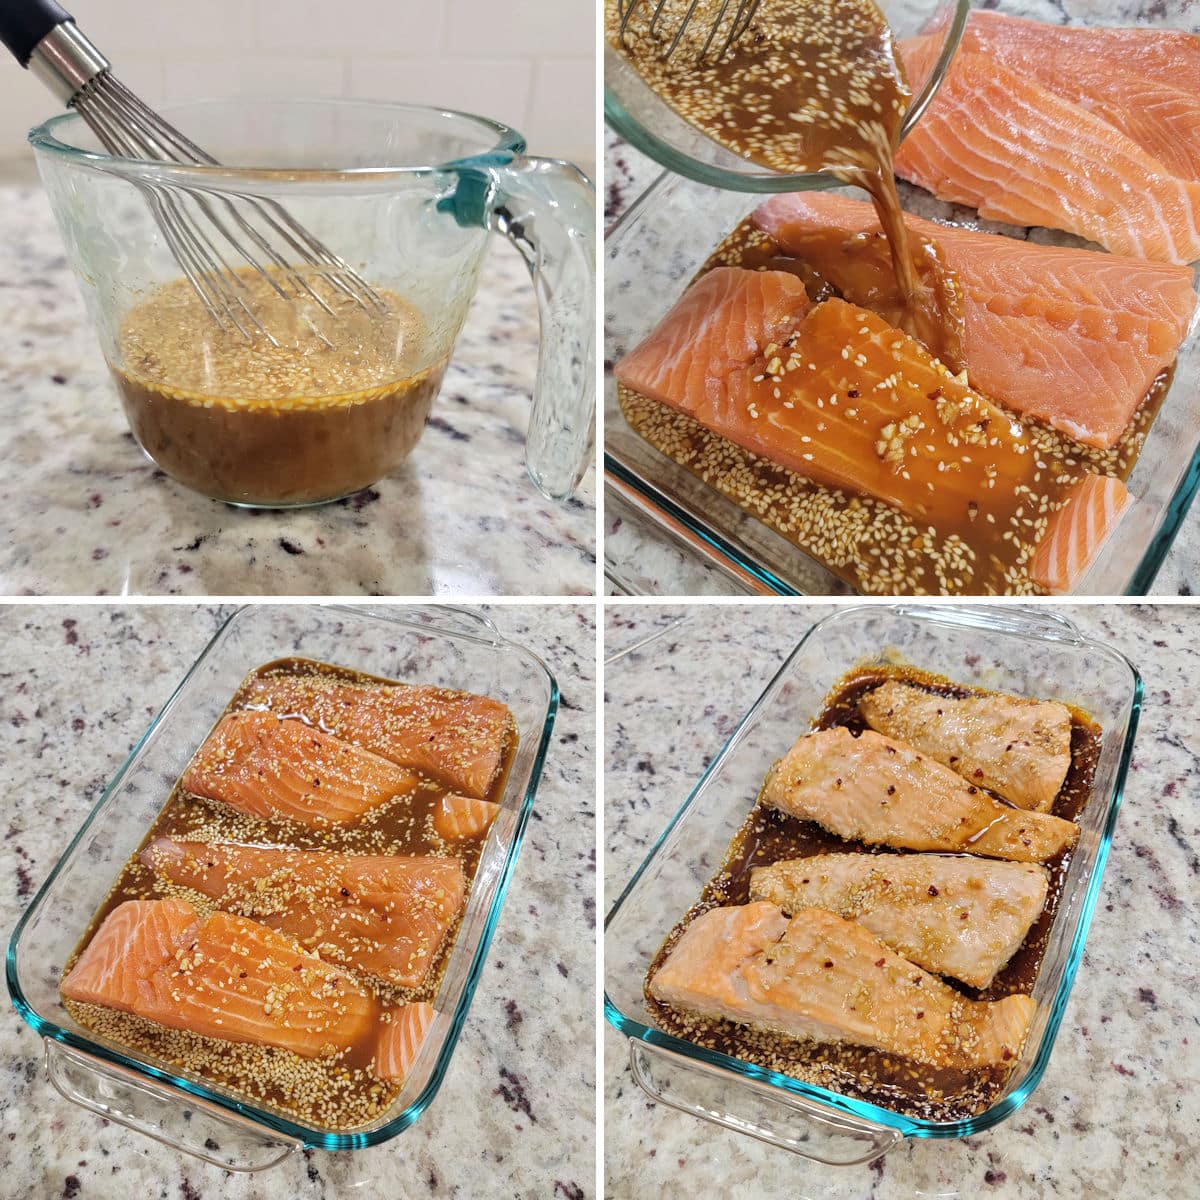 Making teriyaki salmon in a glass baking dish.